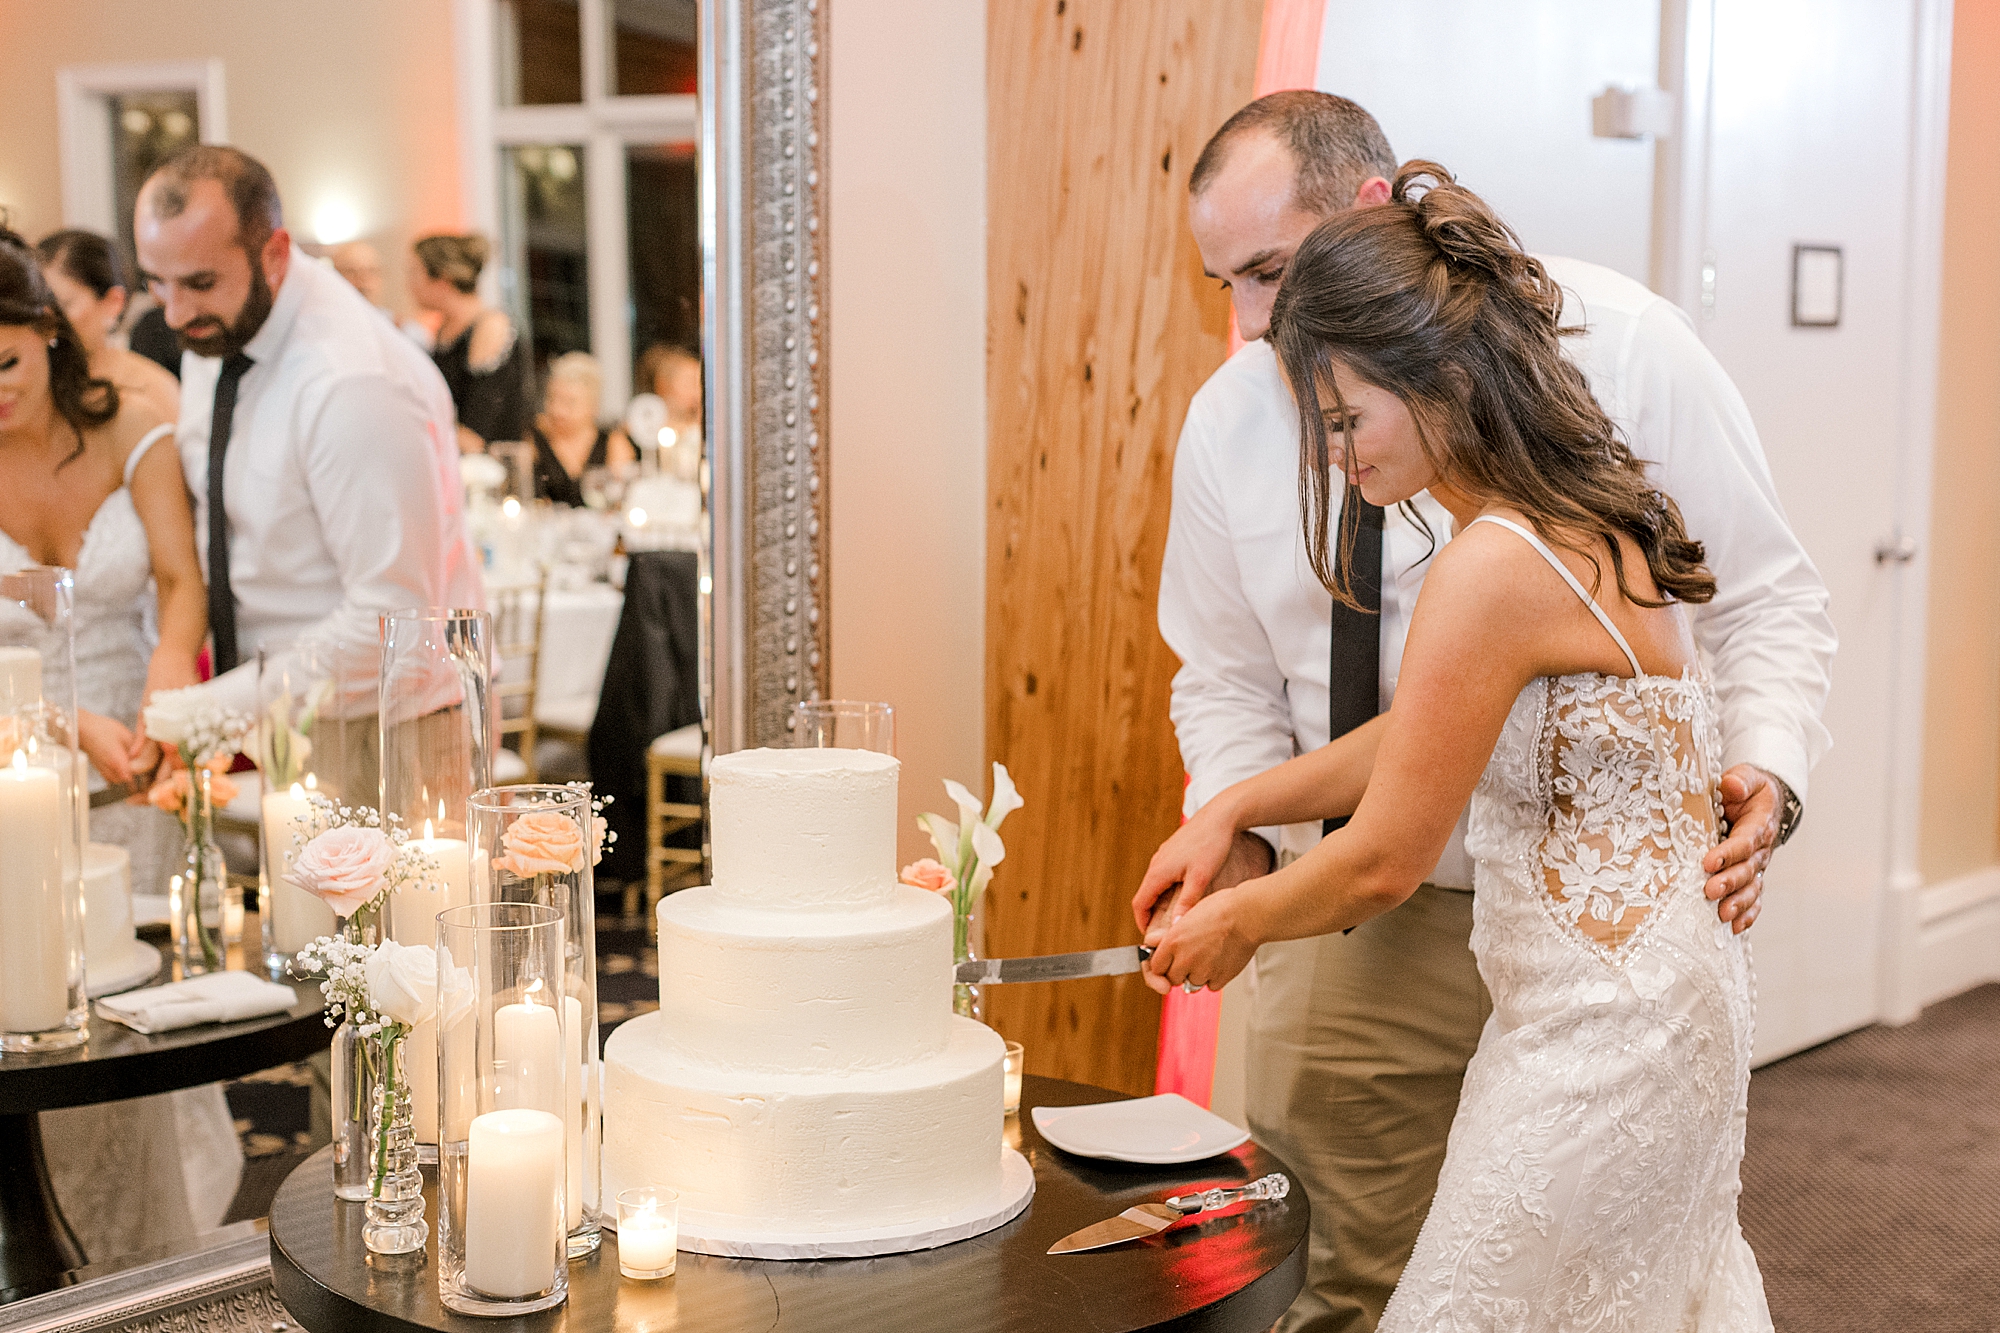 newlyweds cut wedding cake at LBI wedding reception